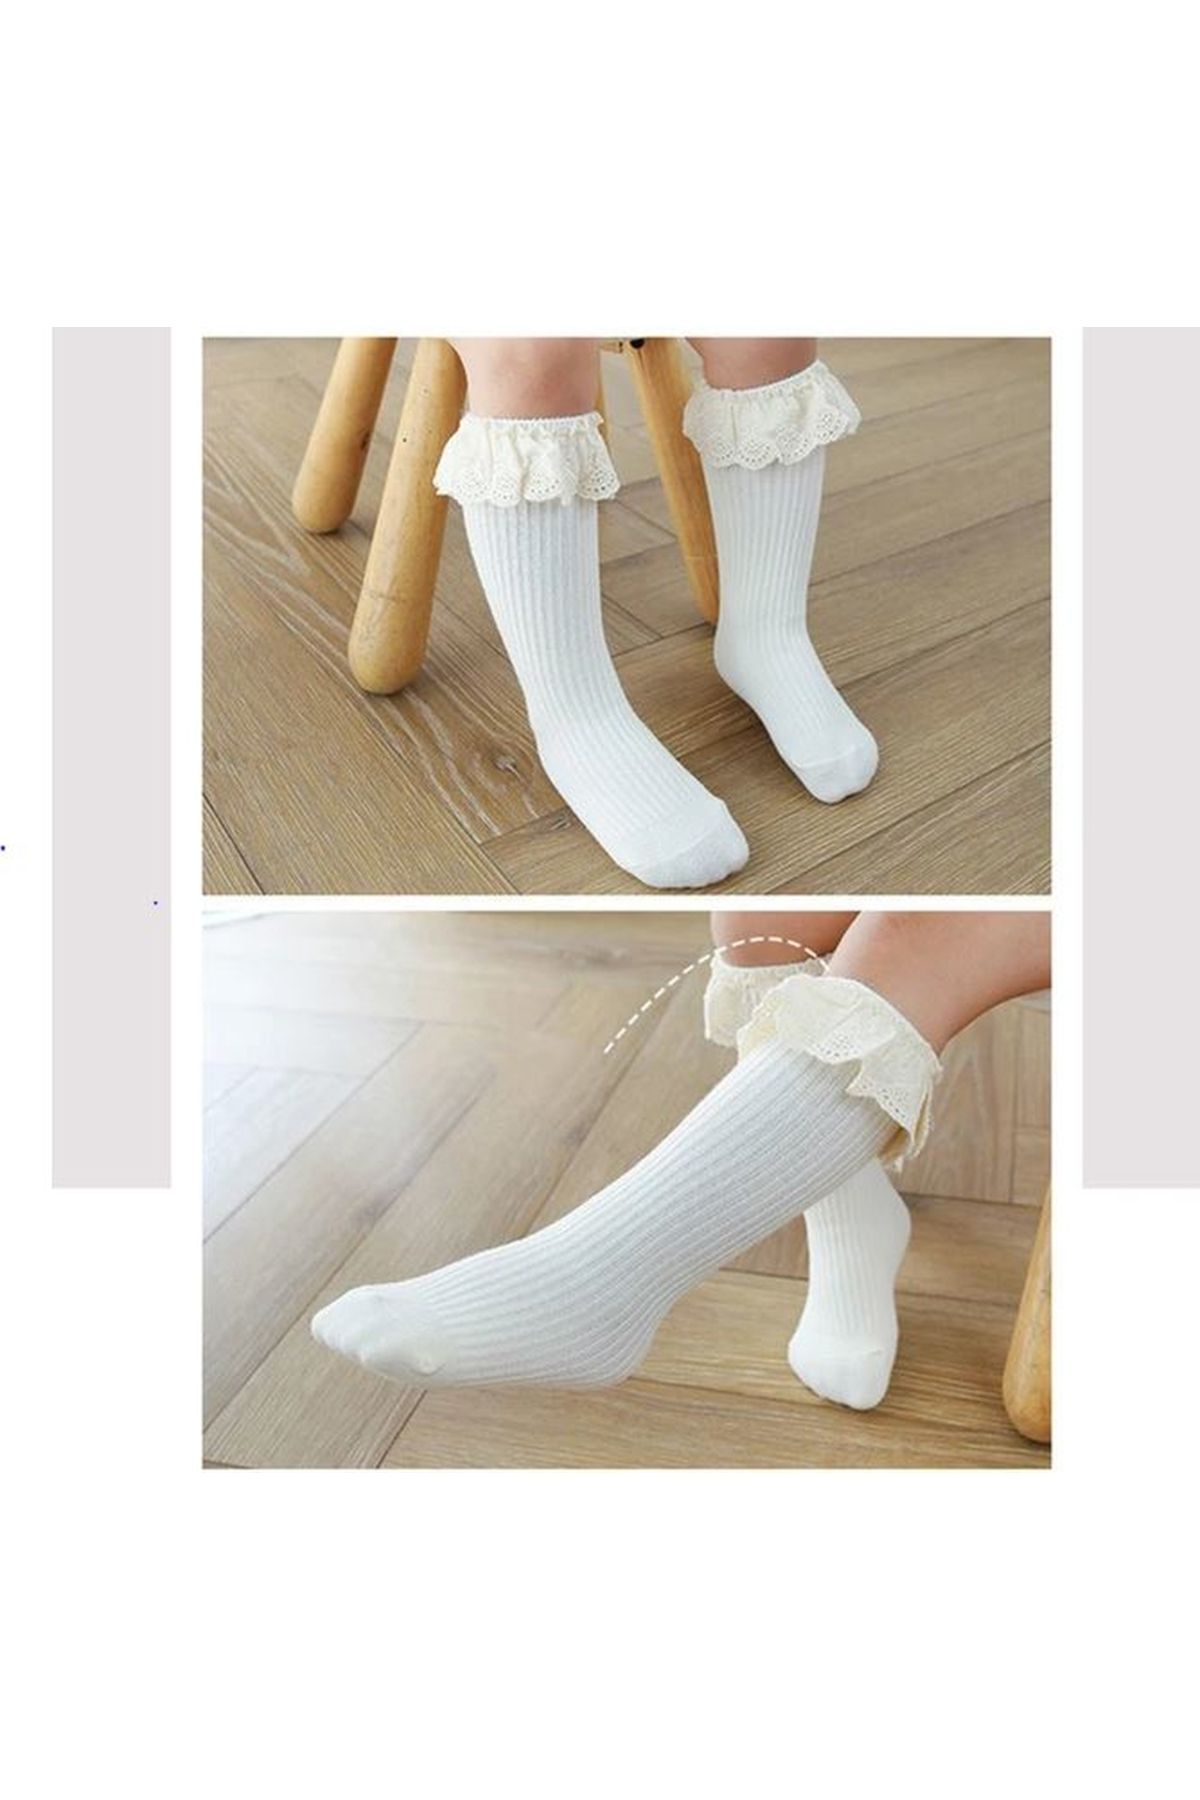 ESES BEBE Bebek/kızlar diz altı çorap yumuşak pamuklu dantelli prenses çocuk çorapı fırfırlı